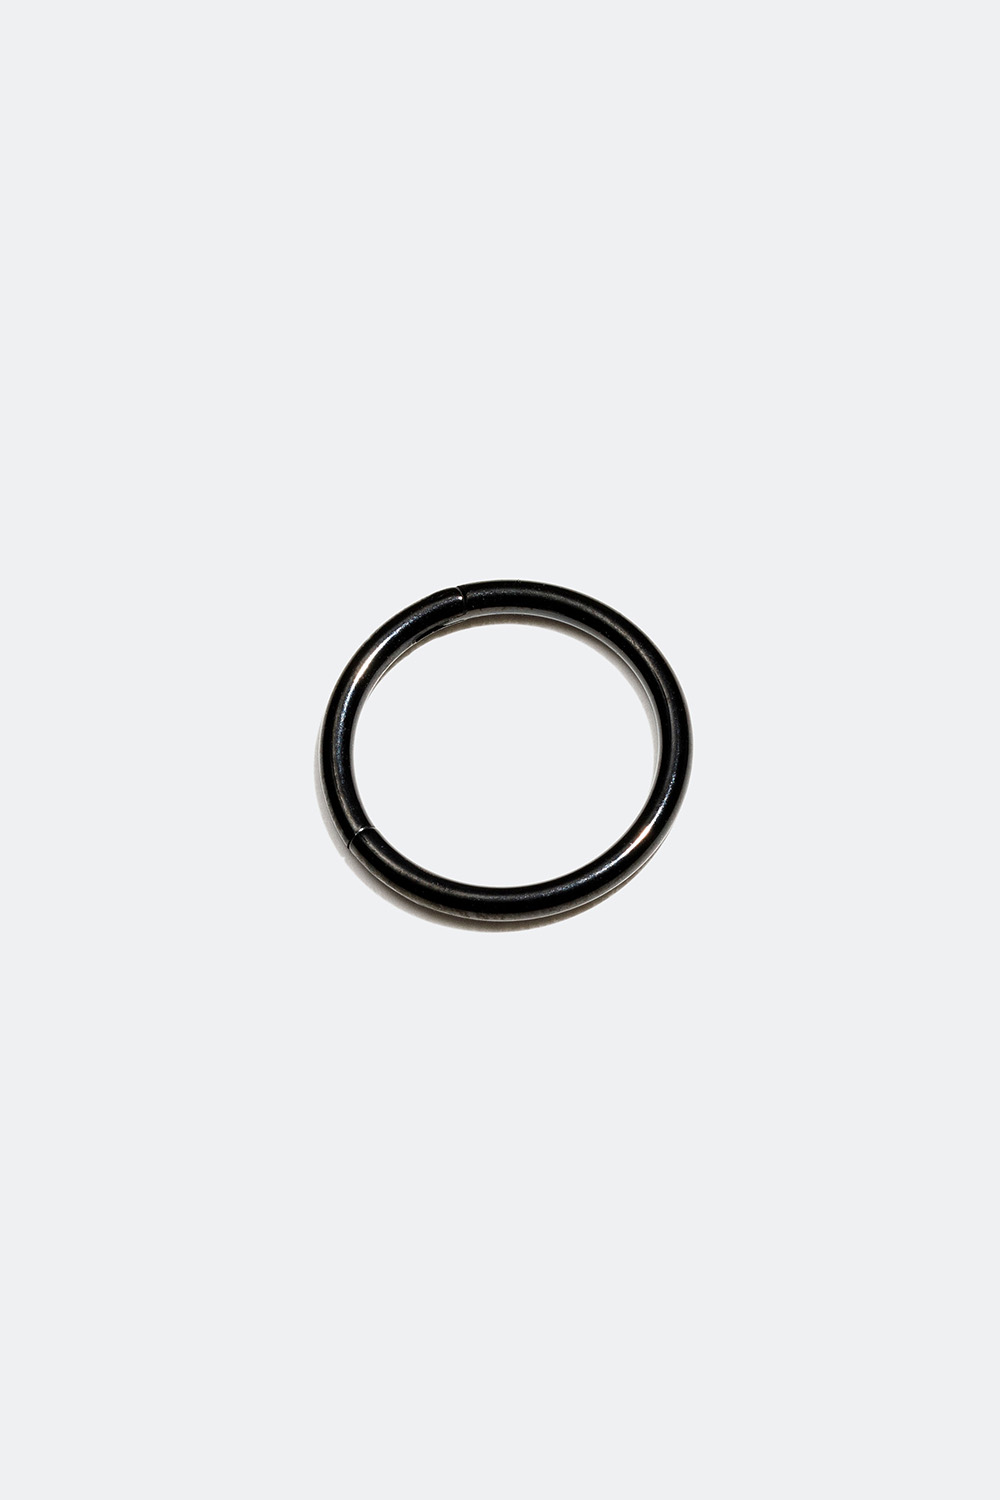 Sort piercing ring, 10 mm, clicker i gruppen Smykker / Piercinger hos Glitter (255000569000)